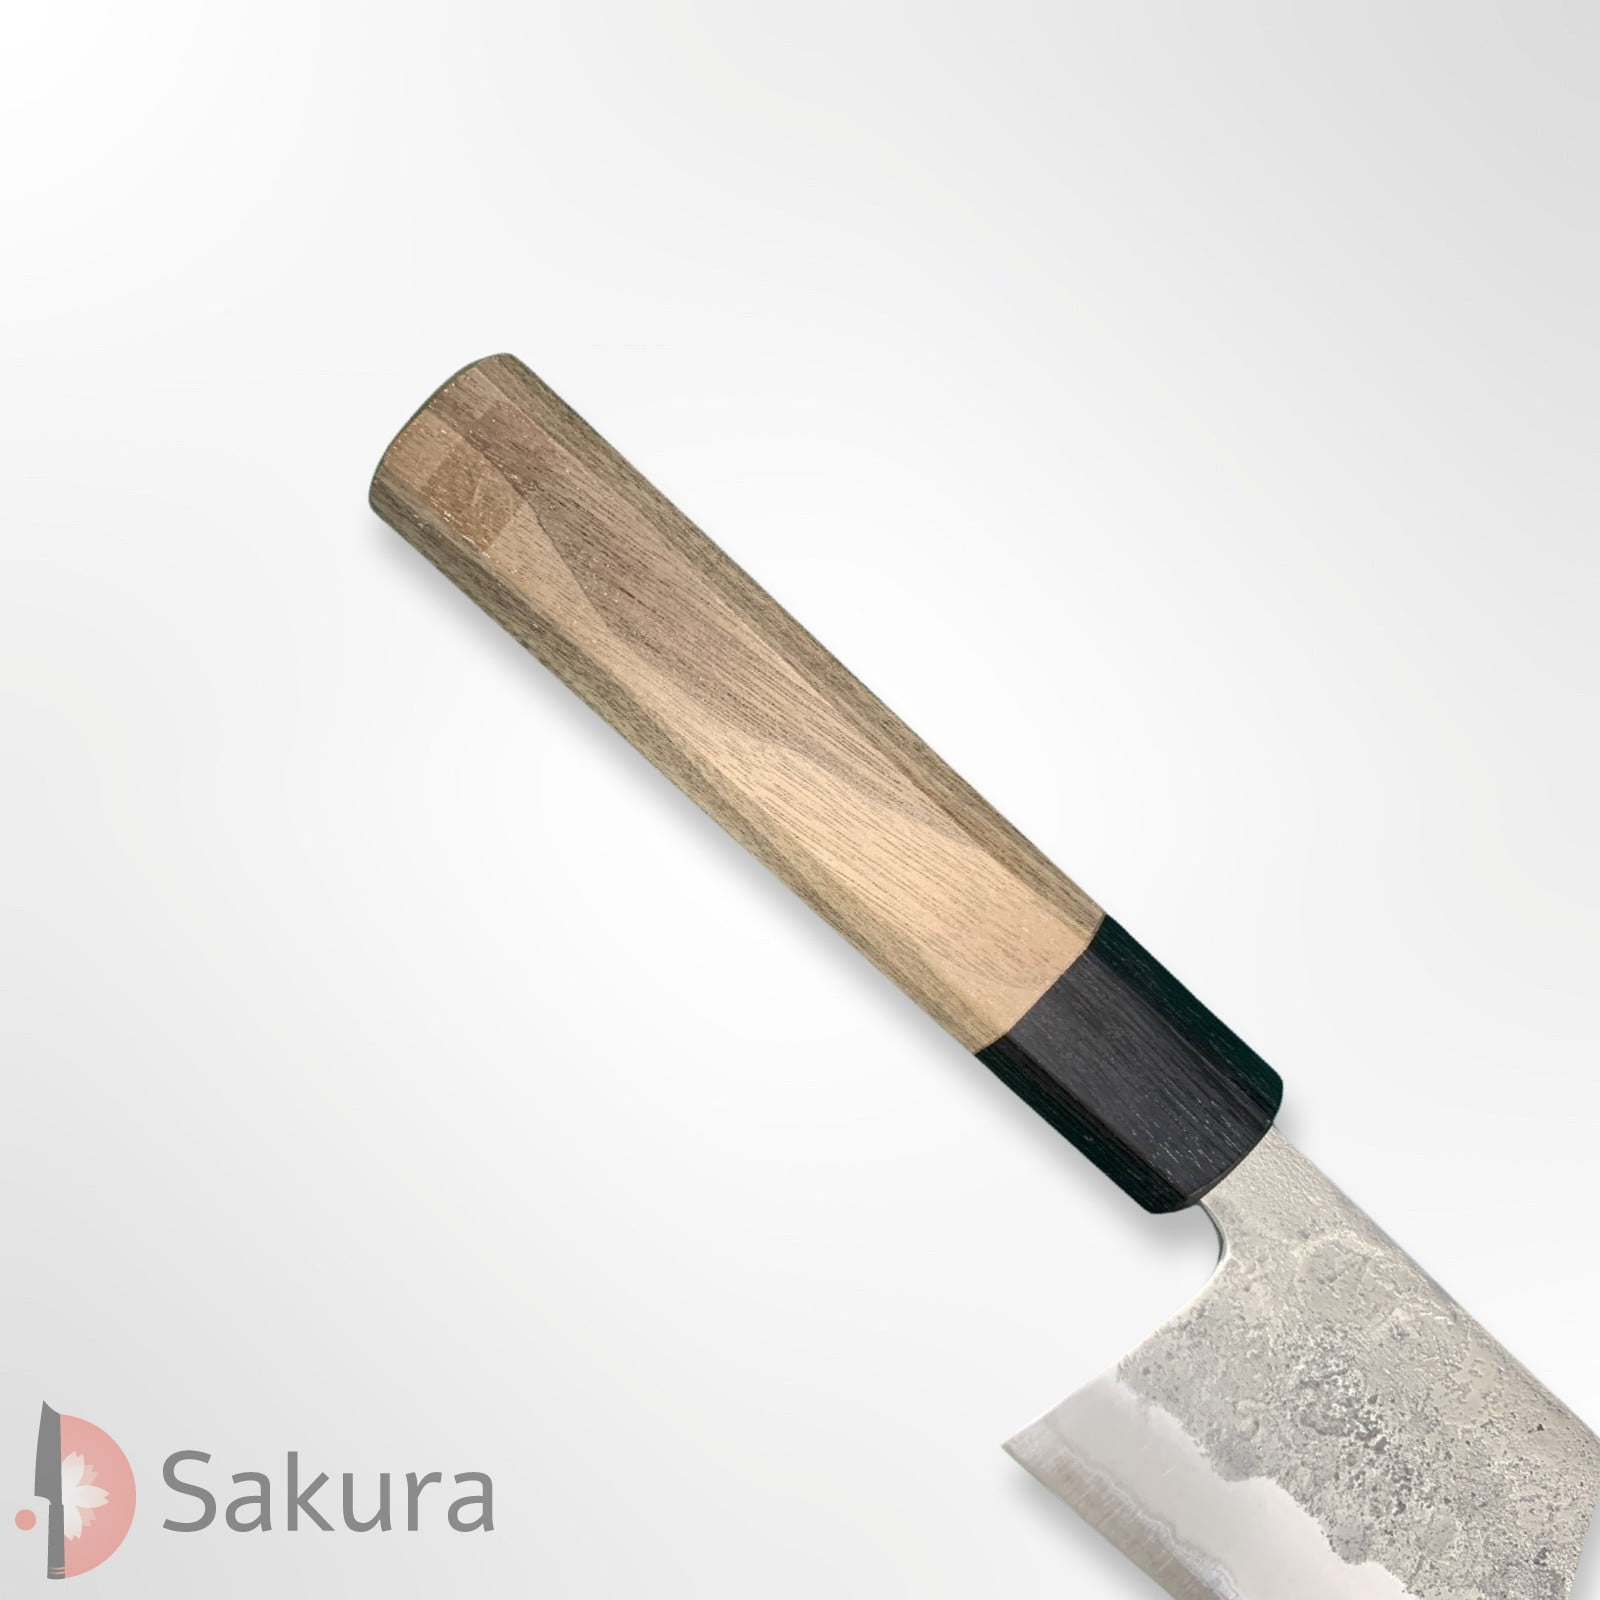 סכין רב-תכליתית בּוּנְקָה 180מ״מ מחושלת בעבודת יד 3 שכבות: פלדת פחמן יפנית מתקדמת מסוג Aogami#2 עטופה פלדת אל-חלד  גימור מט חיספוס טבעי מאצוברה יפן – SKMATSTKKNBB18042